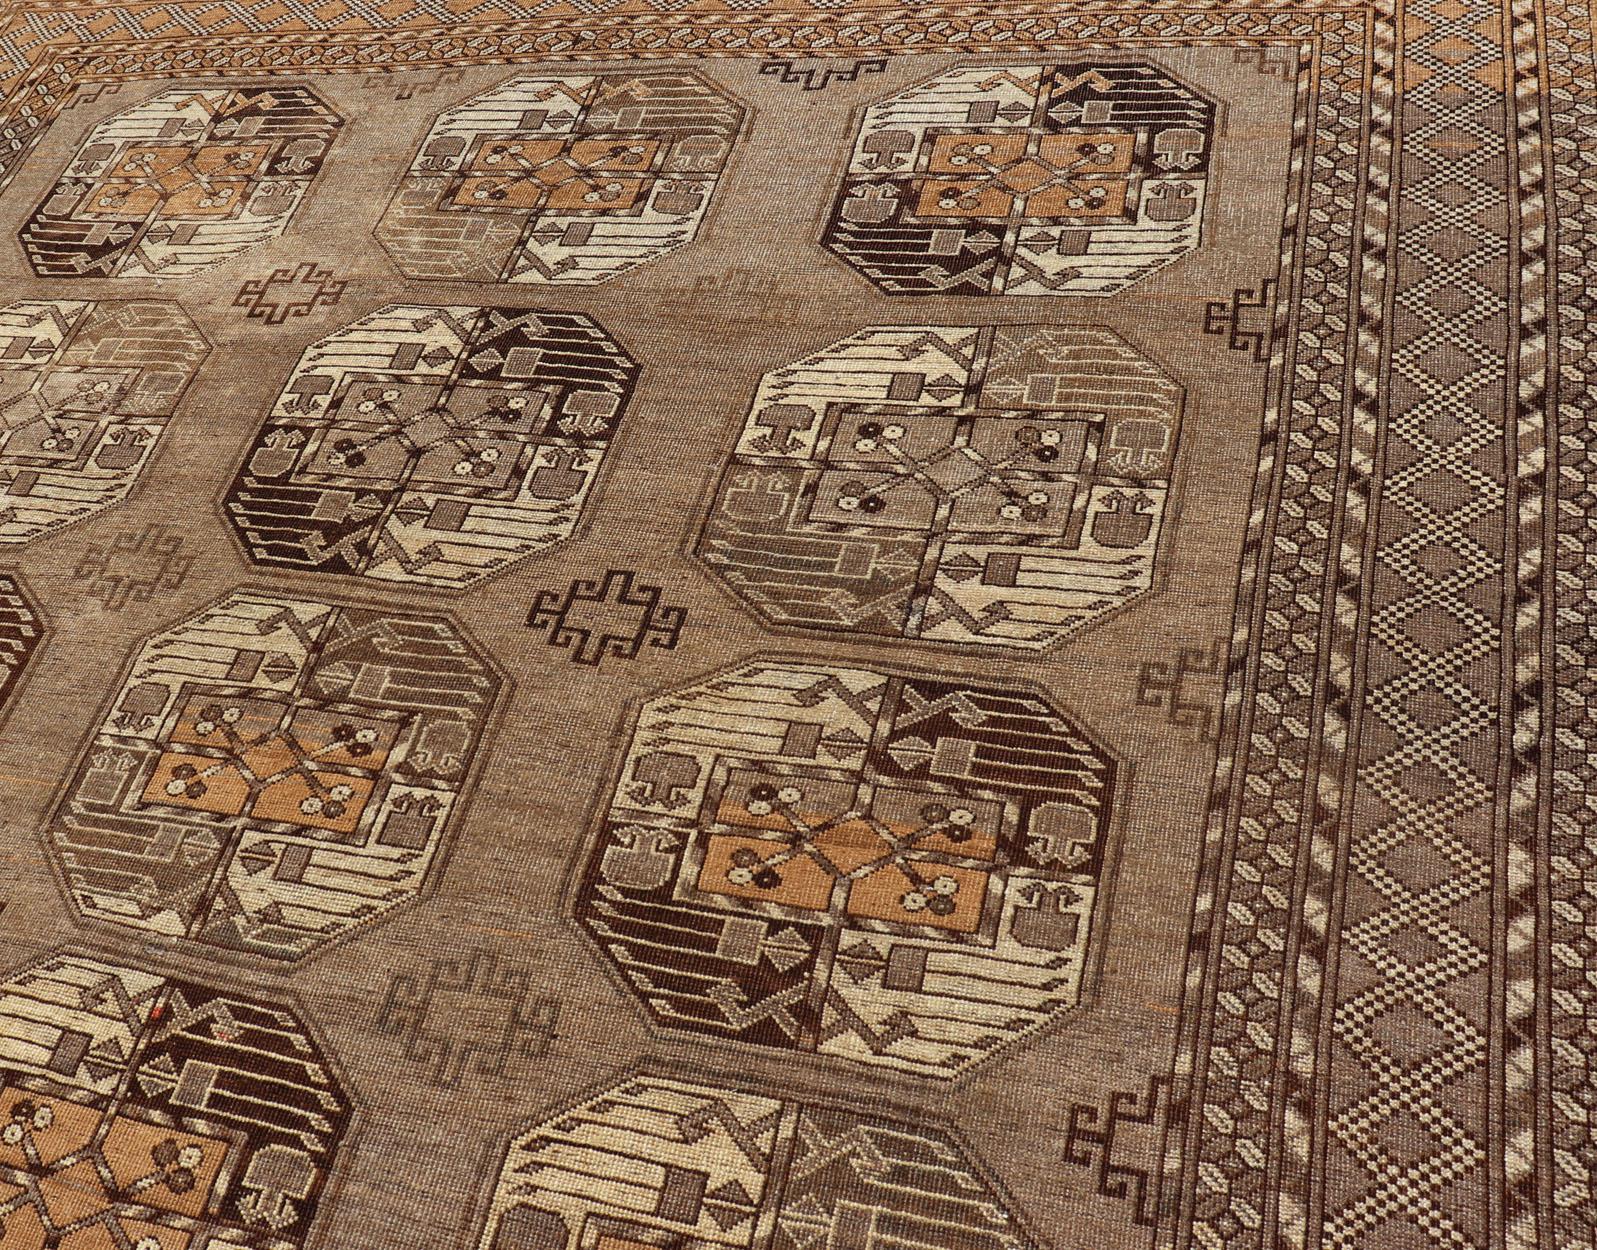 Tapis Turkomen Ersari en laine nouée à la main avec un design répétitif subgéométrique Gul, Keivan Woven Arts ; tapis EMB-9646-P13546, pays d'origine / type : Turkestan / Ersari, circa 1940s.

Mesures : 7'0 x 10'8.

Ce tapis Turkomen Ersari a été